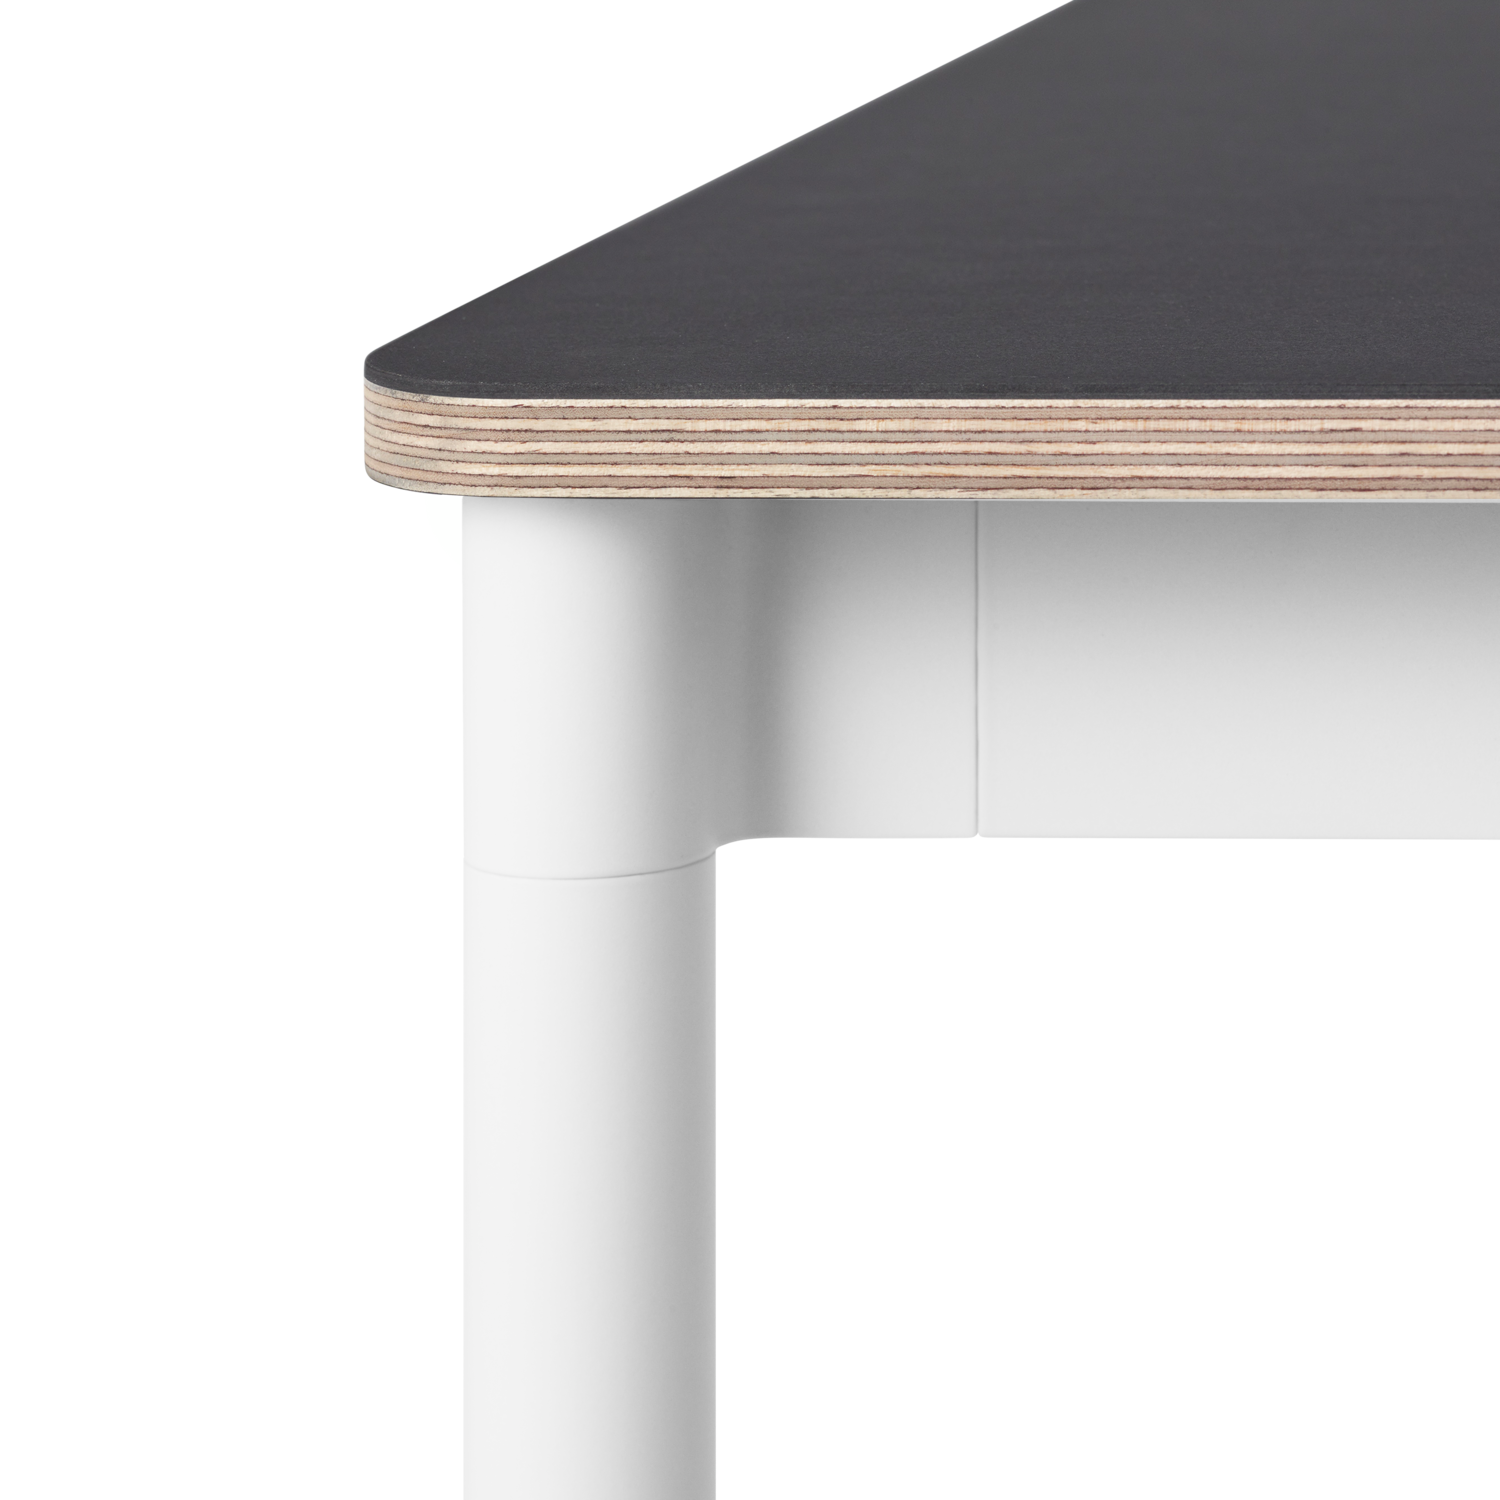 Base Tisch in Schwarz / Weiss präsentiert im Onlineshop von KAQTU Design AG. Schreibtisch ist von Muuto